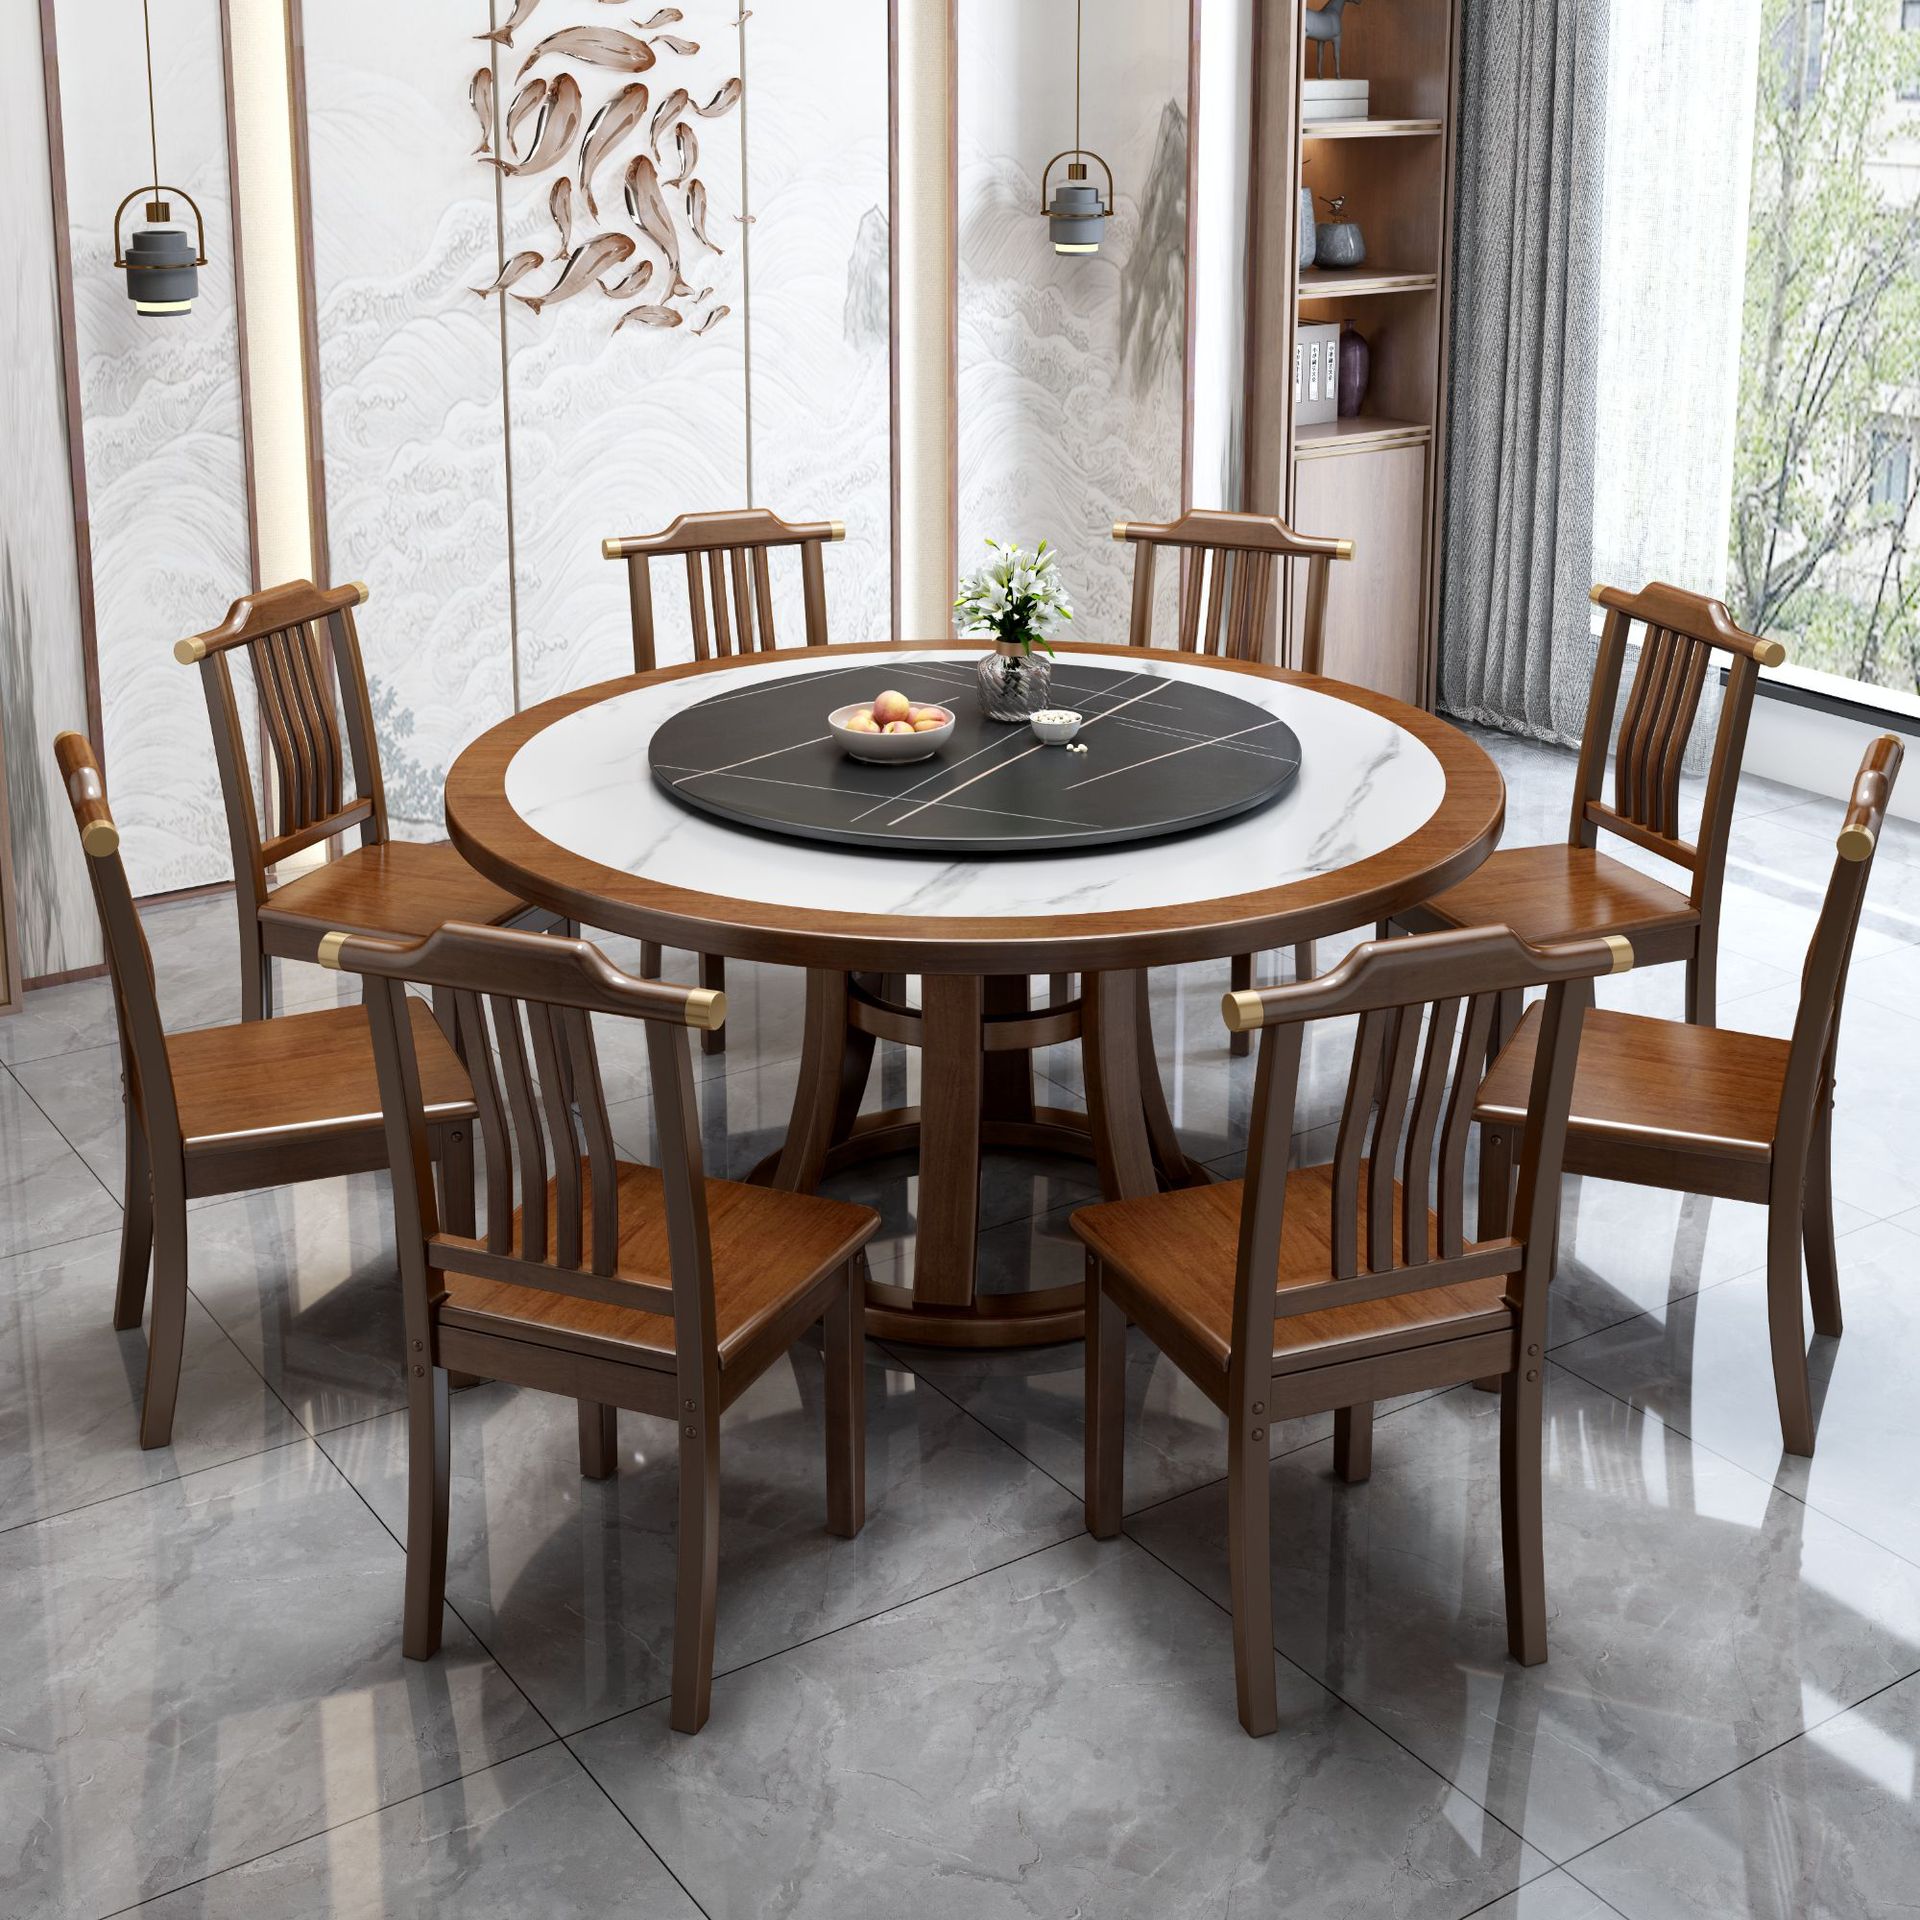 新中式全實木巖闆餐桌圓型現代簡約圓桌家用桌子小戶型餐桌椅組合